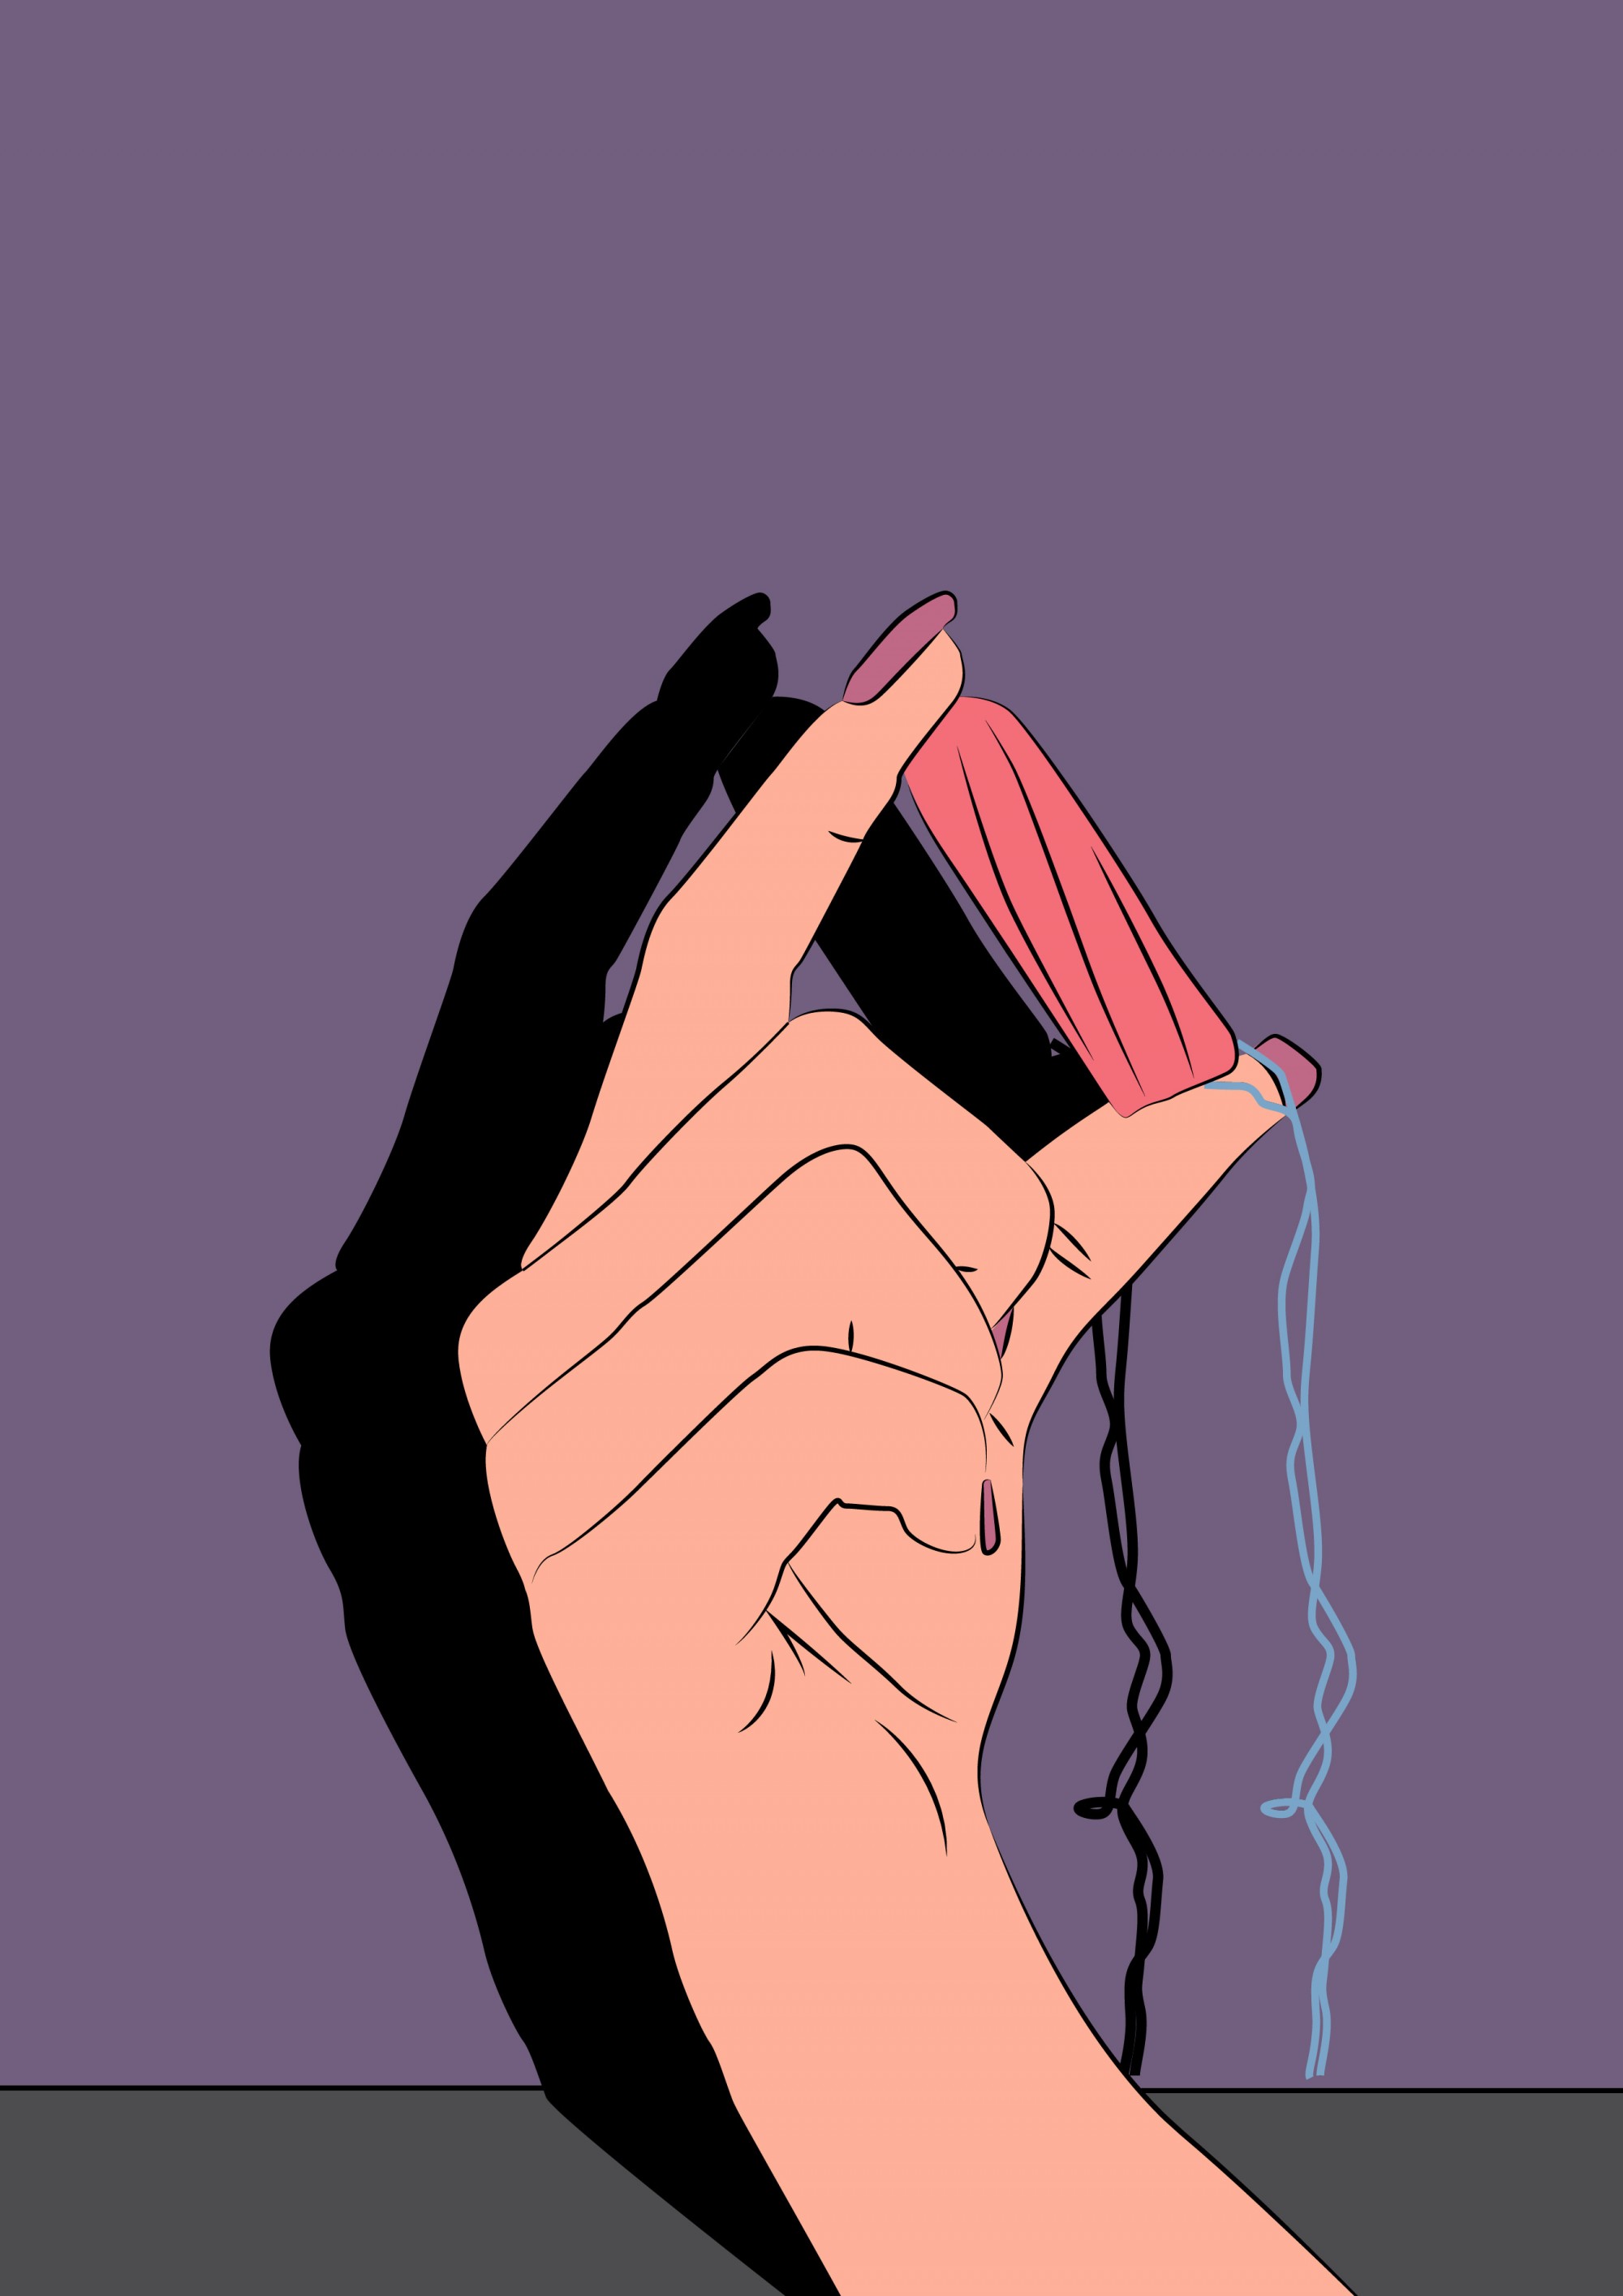 Eine Hand hält einen pinken Tampon zwischen den Fingerspitzen